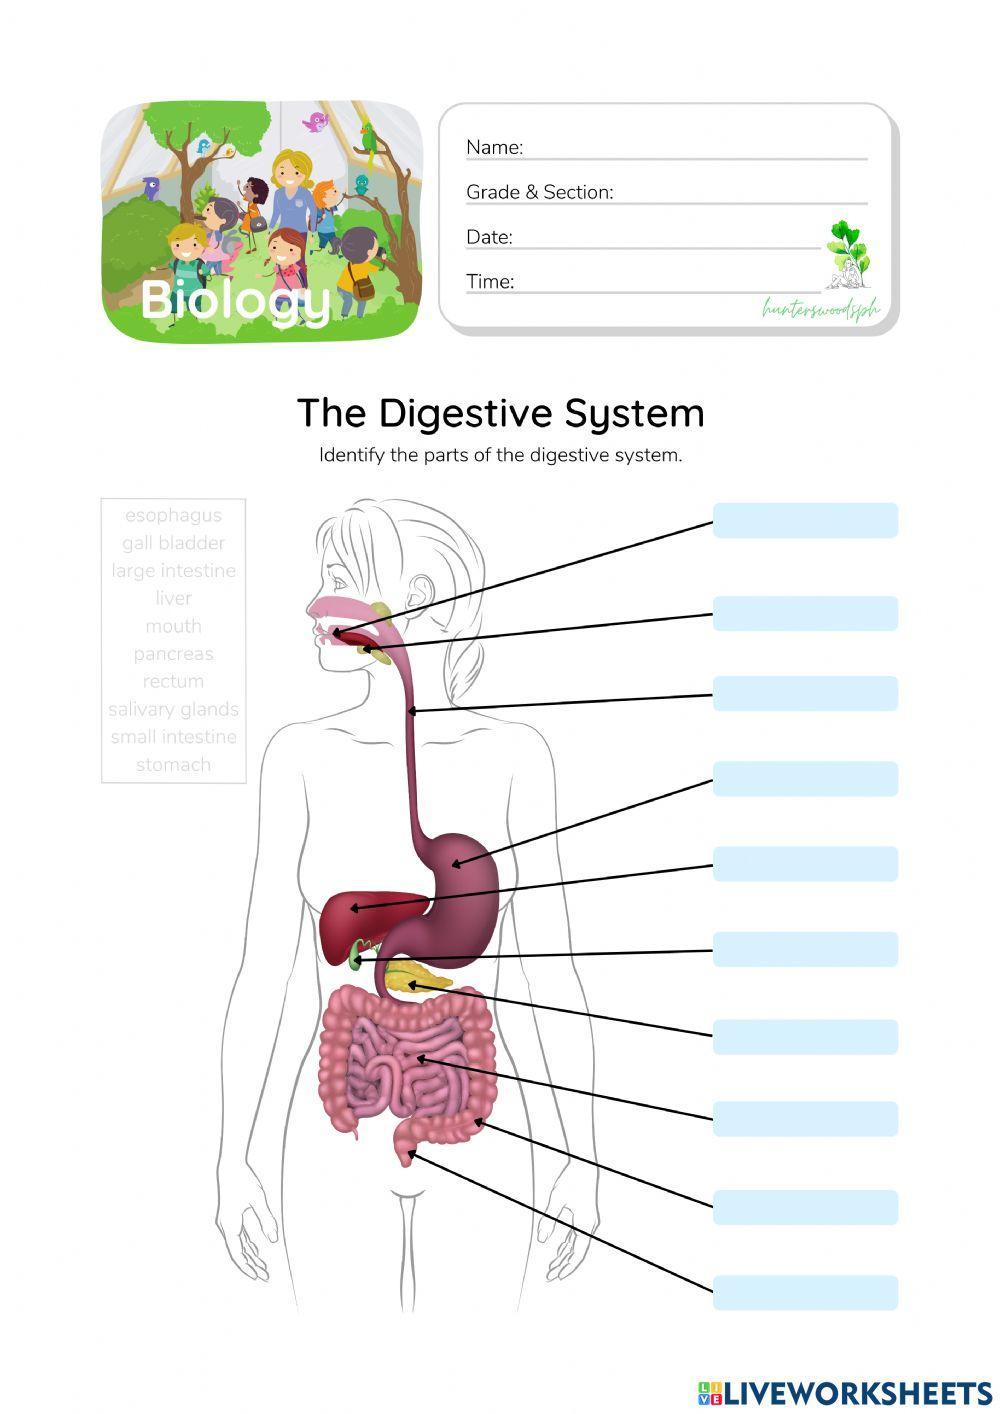 Digestive System - HunterWoodsPH.com Worksheet